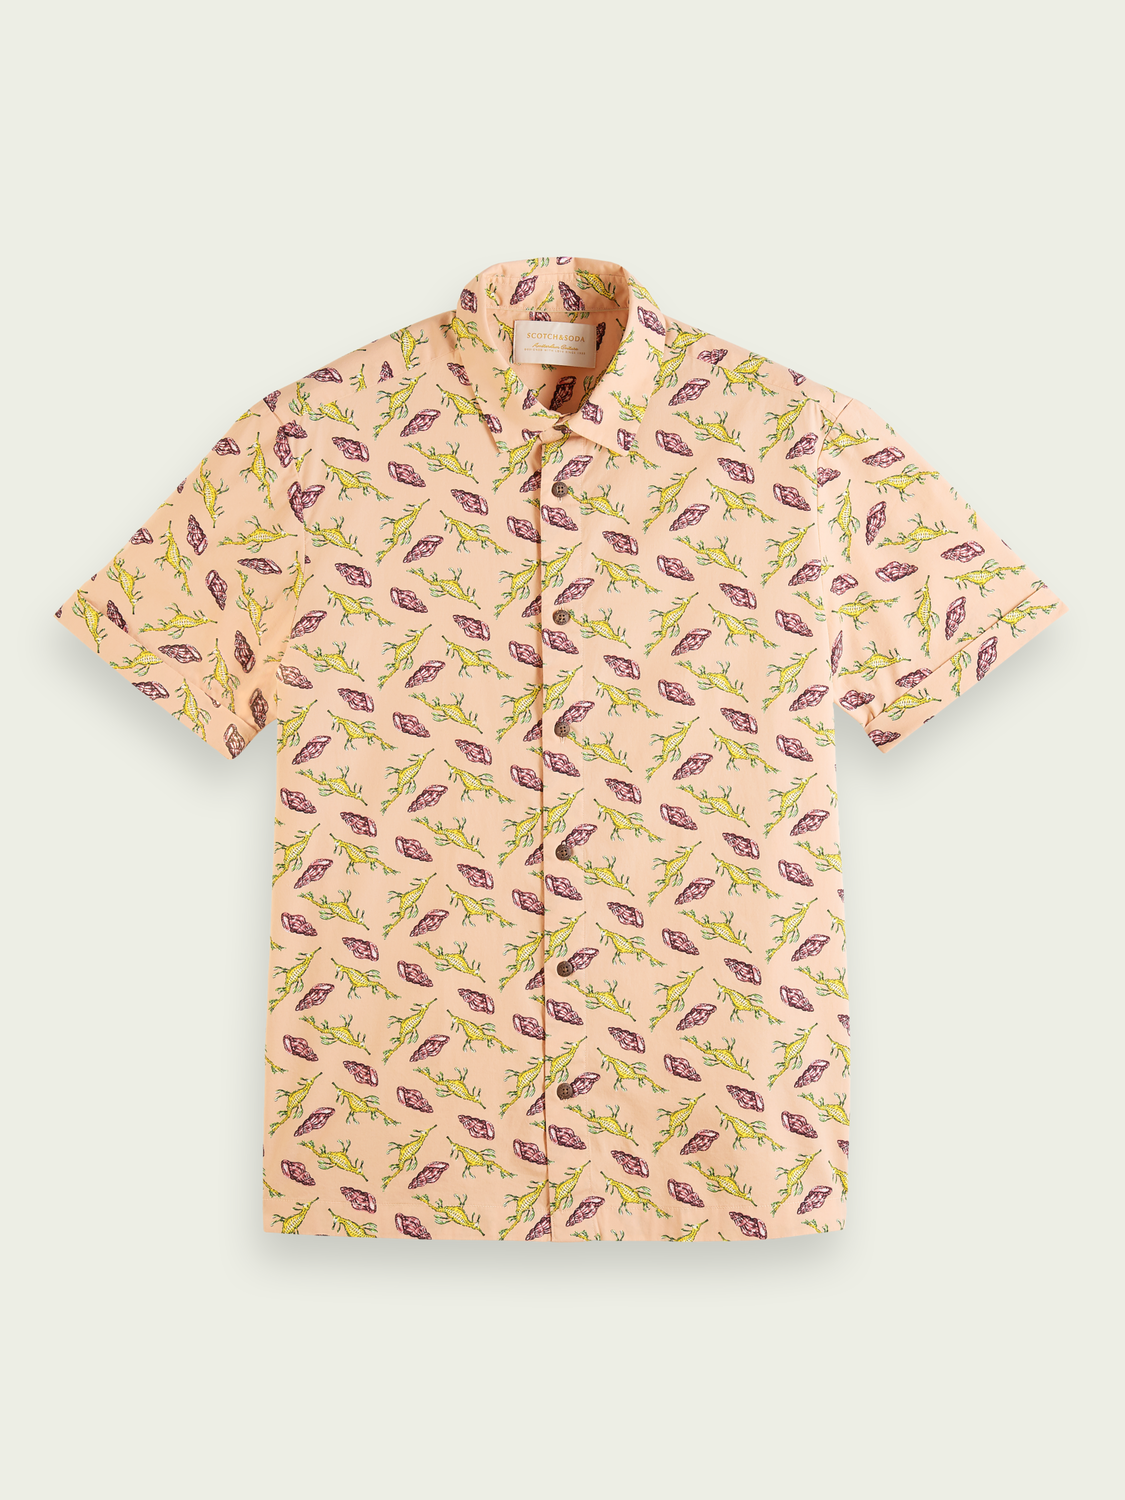 All-over Printed Hawaiian Short Sleeve Shirt